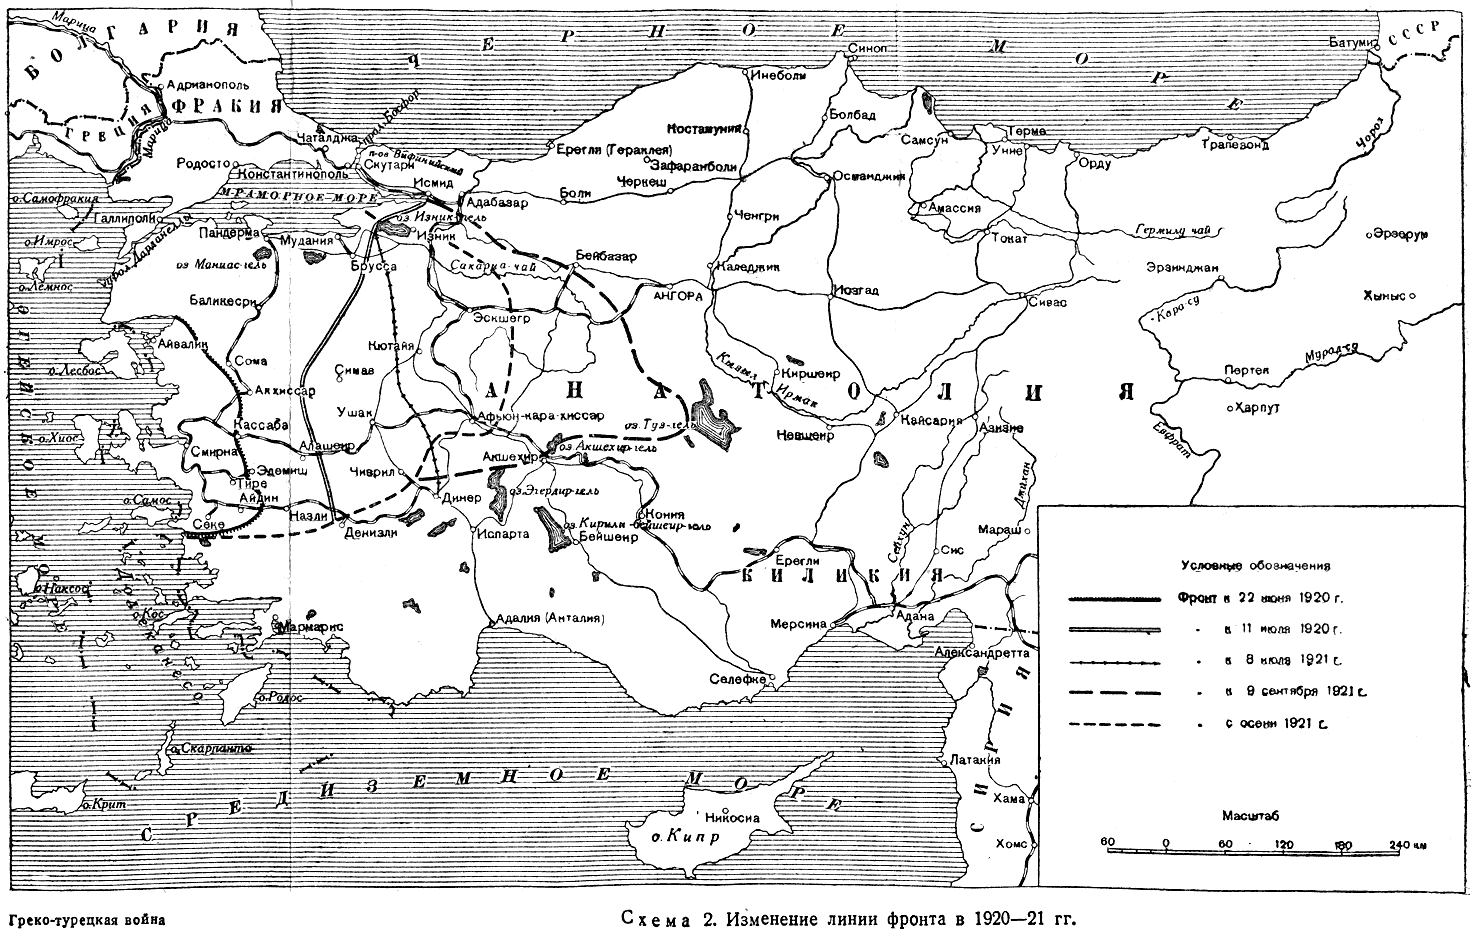 Греция за участие в империалистической войне на стороне Антанты на основании - фото 2